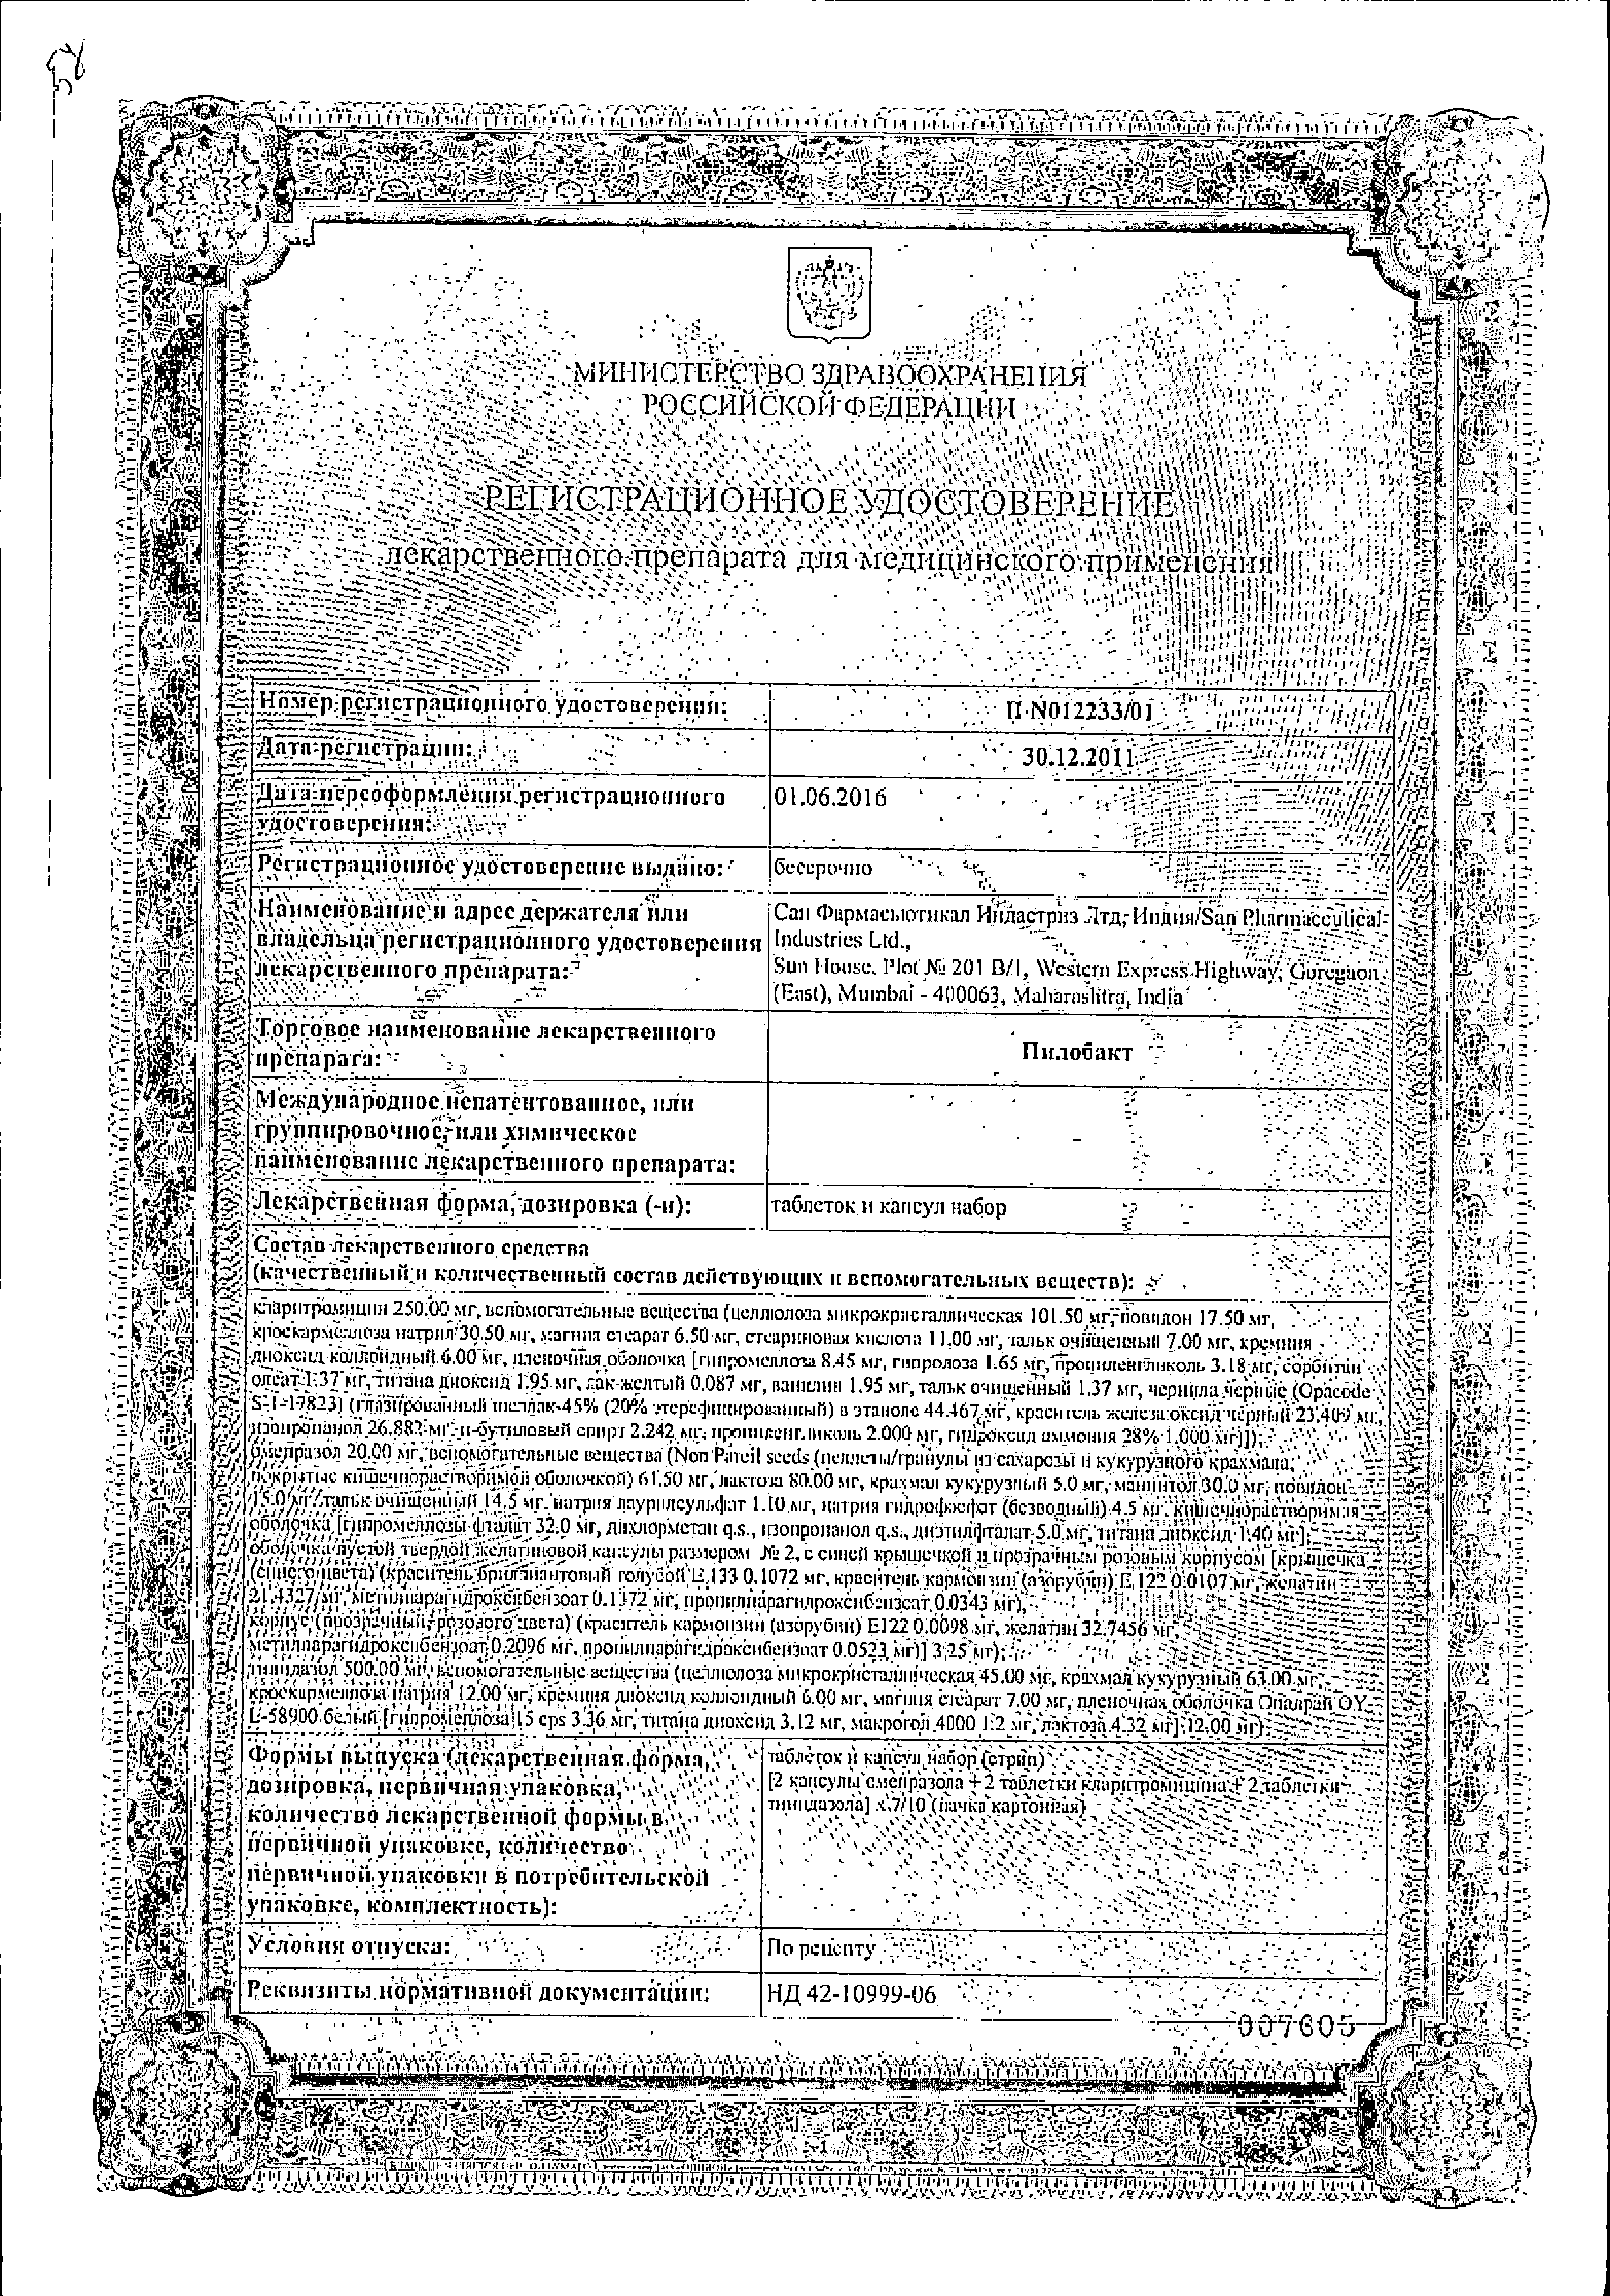 Пилобакт сертификат